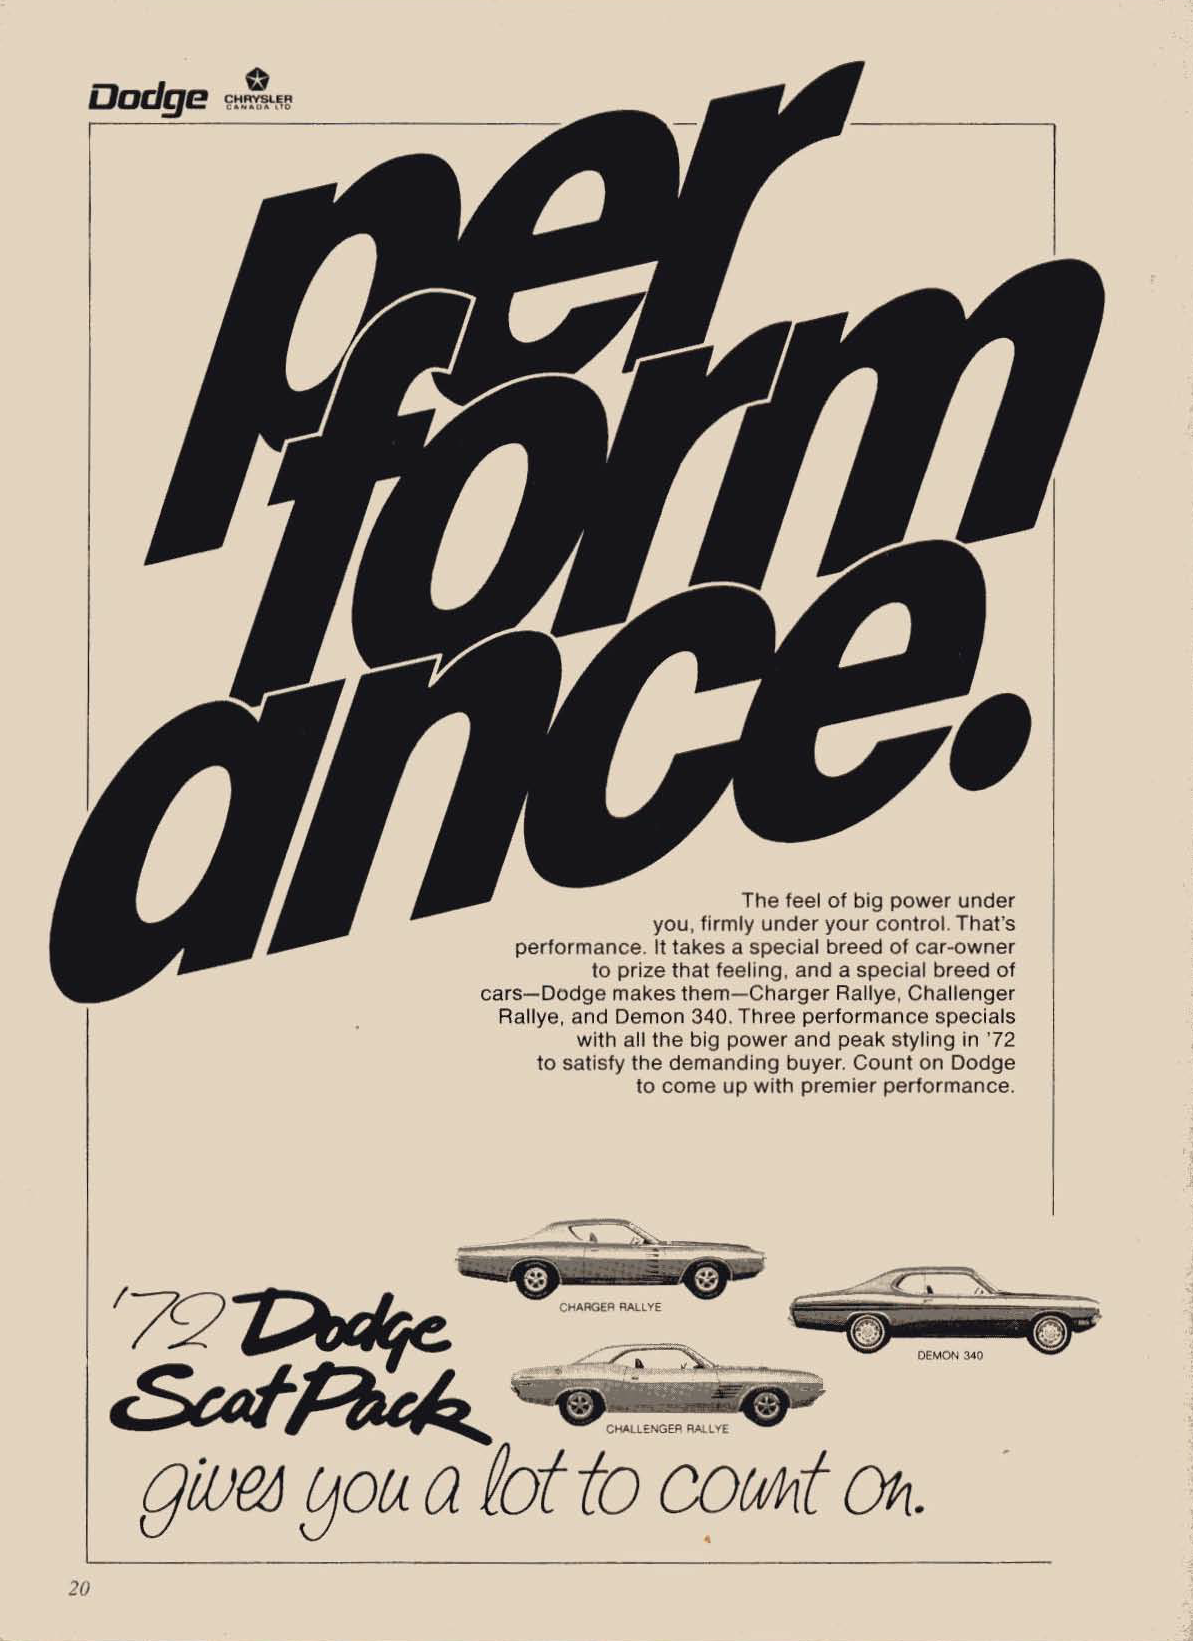 Vintage Dodge ad